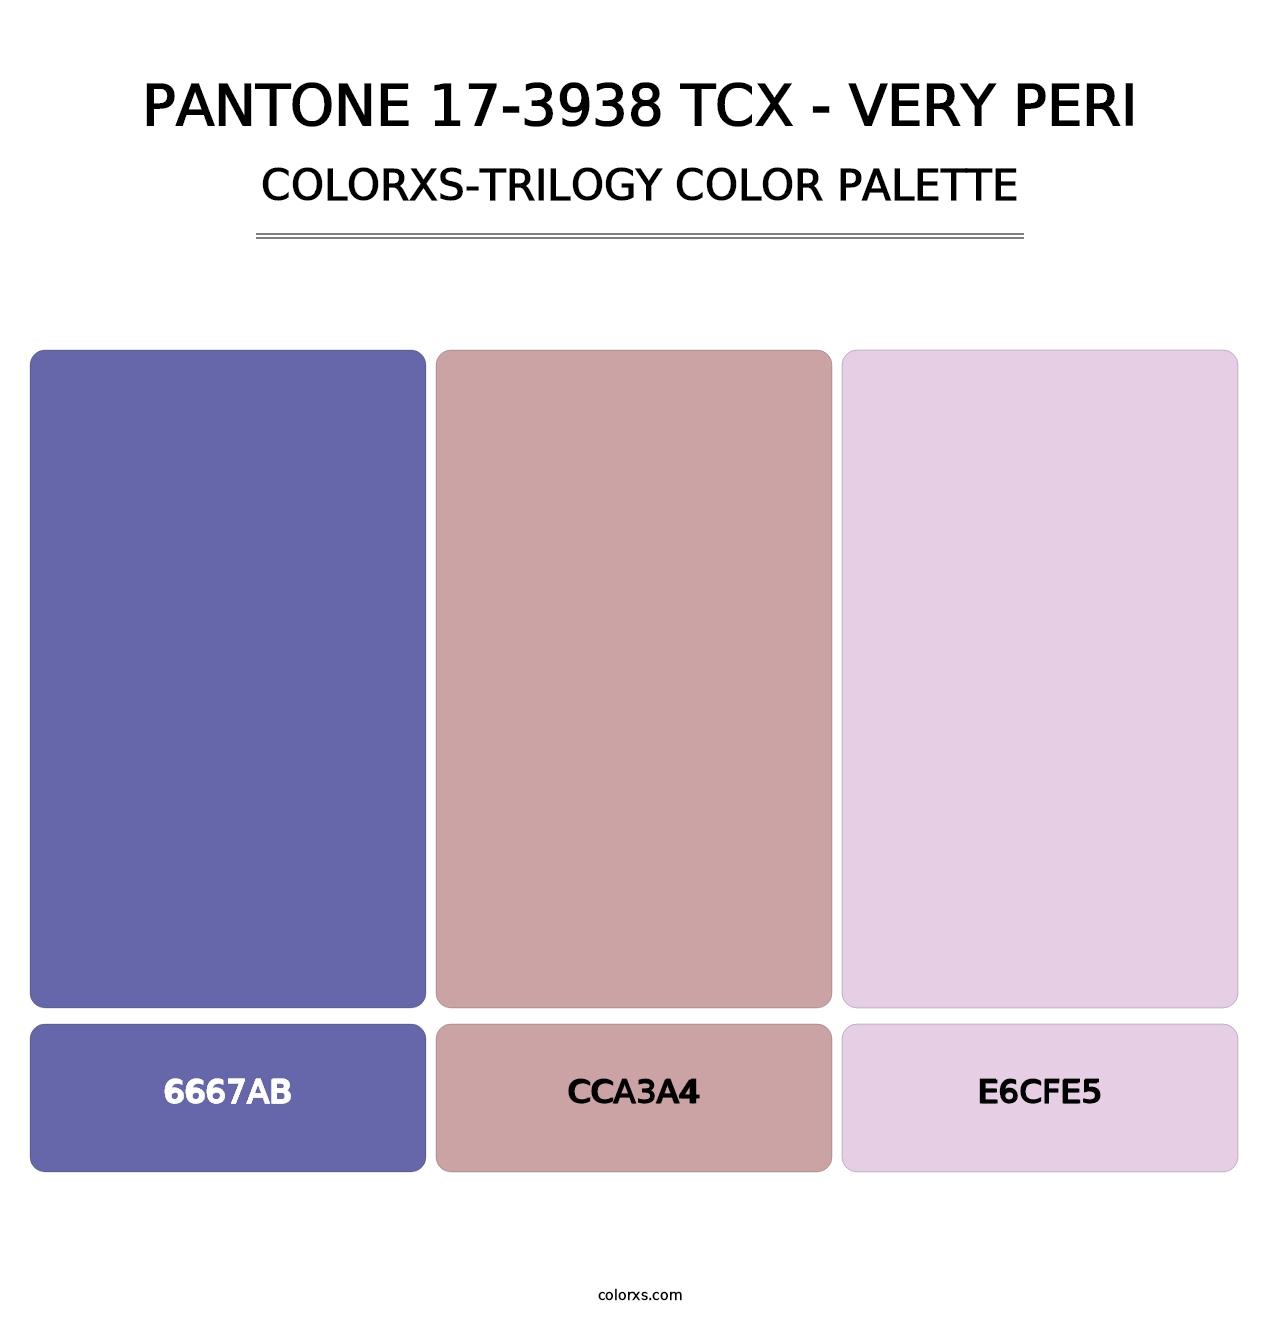 PANTONE 17-3938 TCX - Very Peri - Colorxs Trilogy Palette